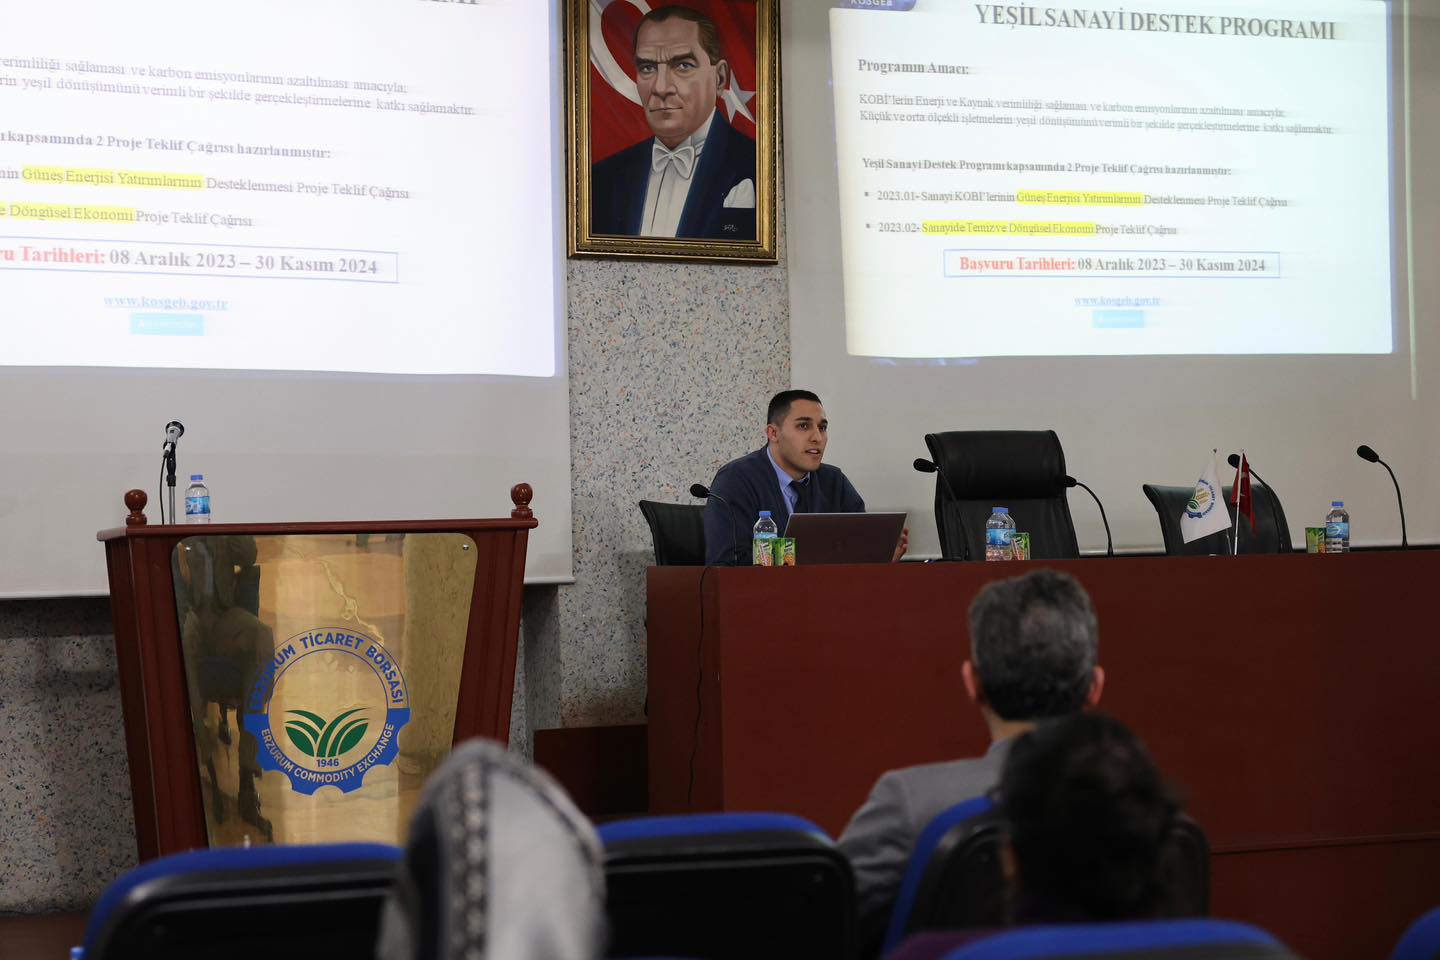 Erzurum Ticaret Borsası ile KOSGEB  Organizasyonunda   “KOBİ’lere Yeşil Sanayi Destek Programı” bilgilendirme semineri düzenledi.